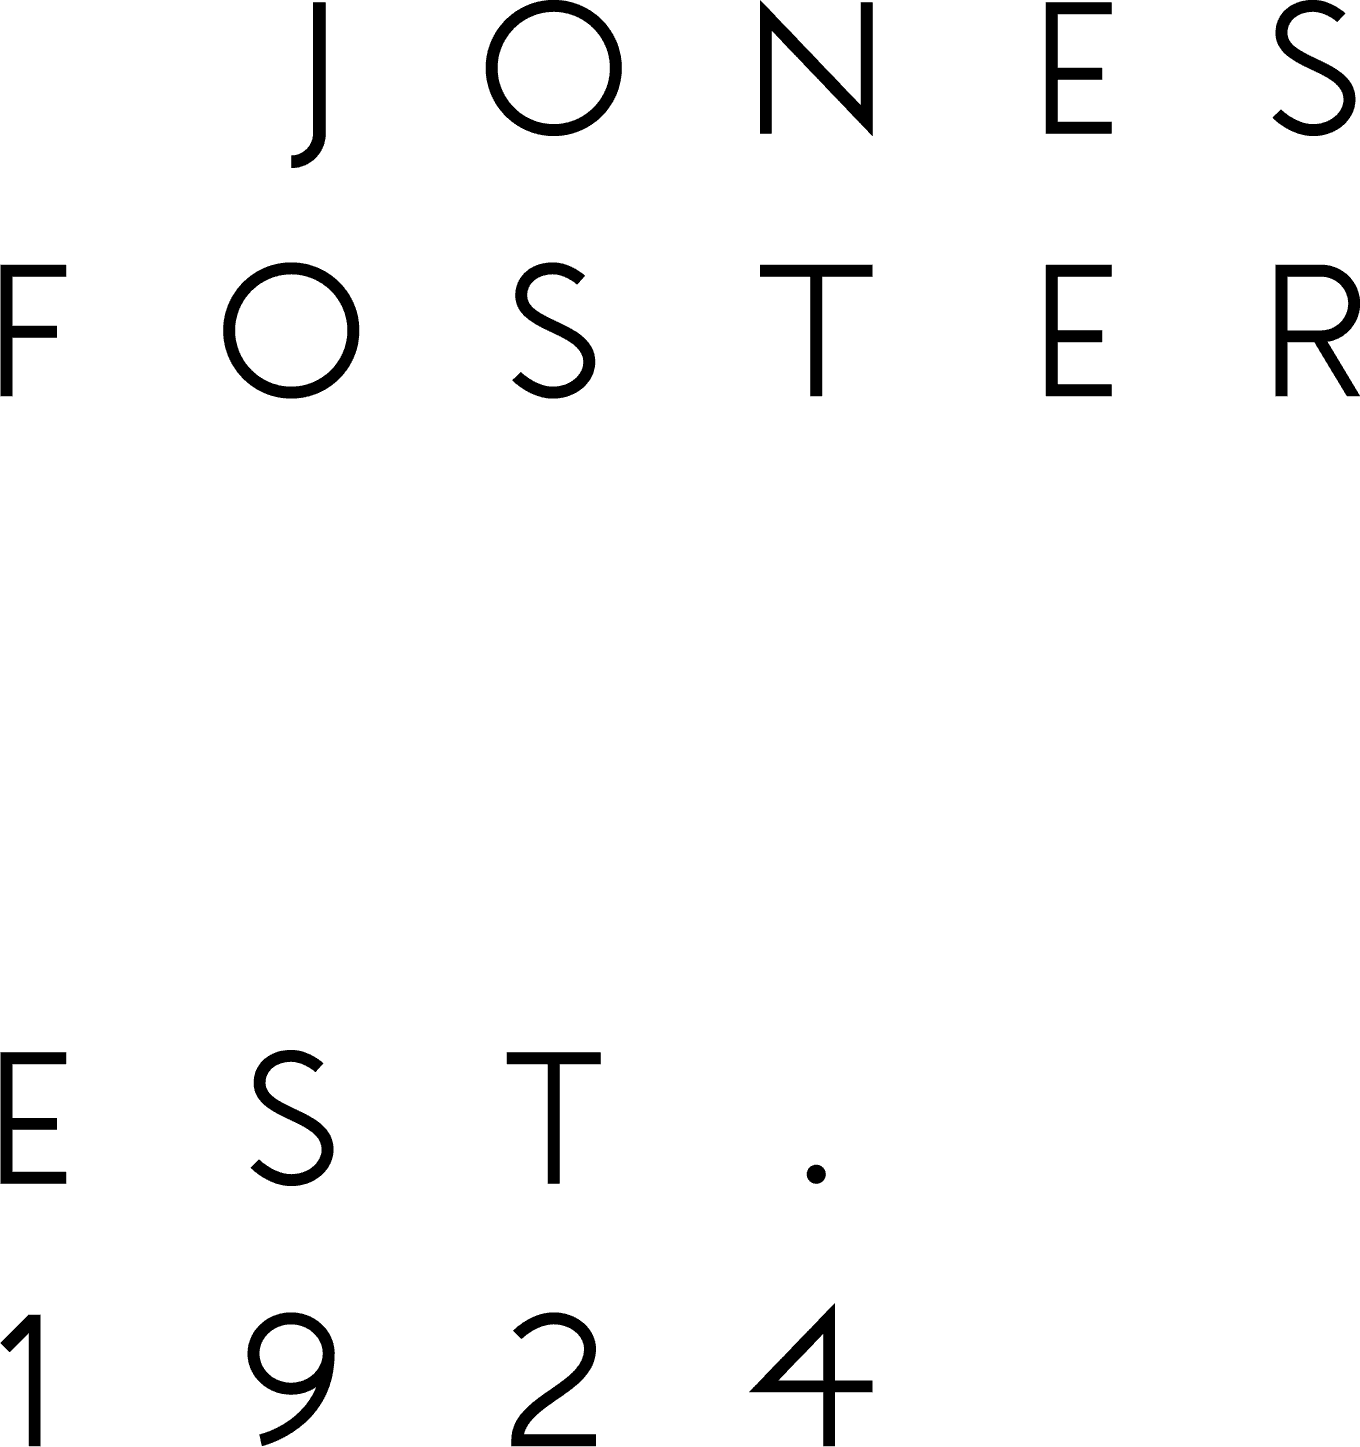 2019 Jones Foster Rebrand